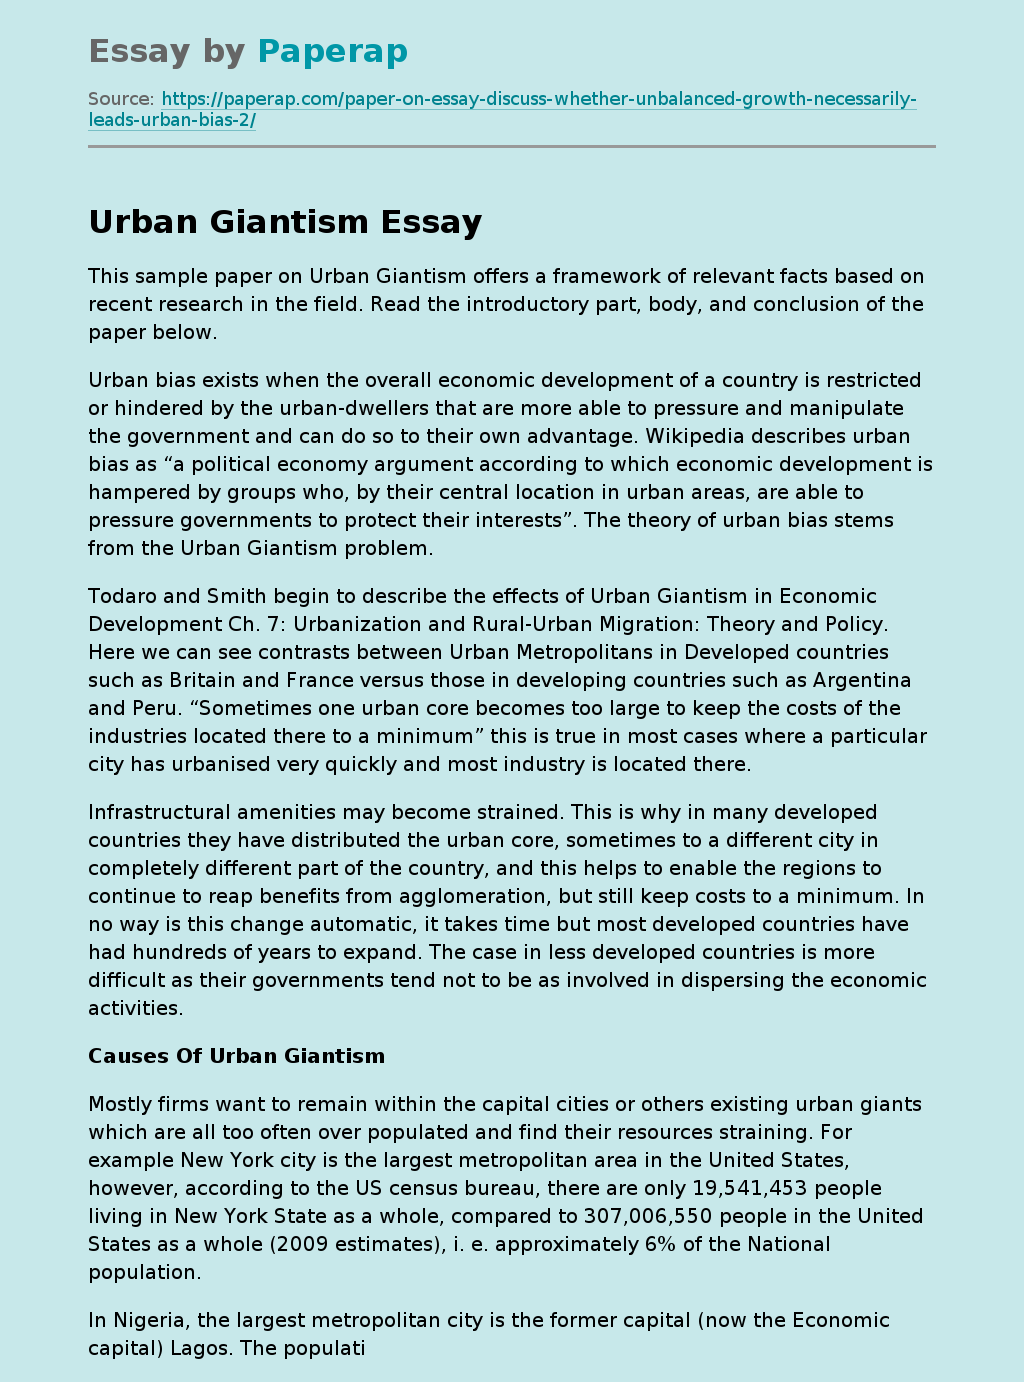 Urban Giantism